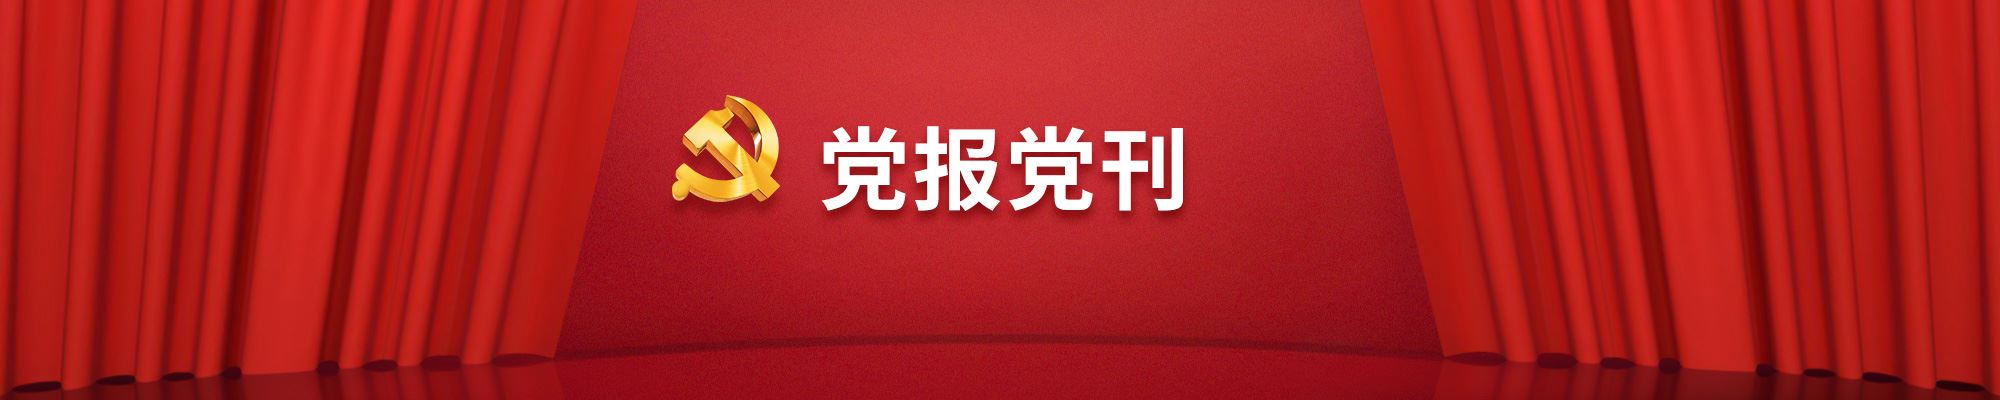 乐宝国际官网党刊